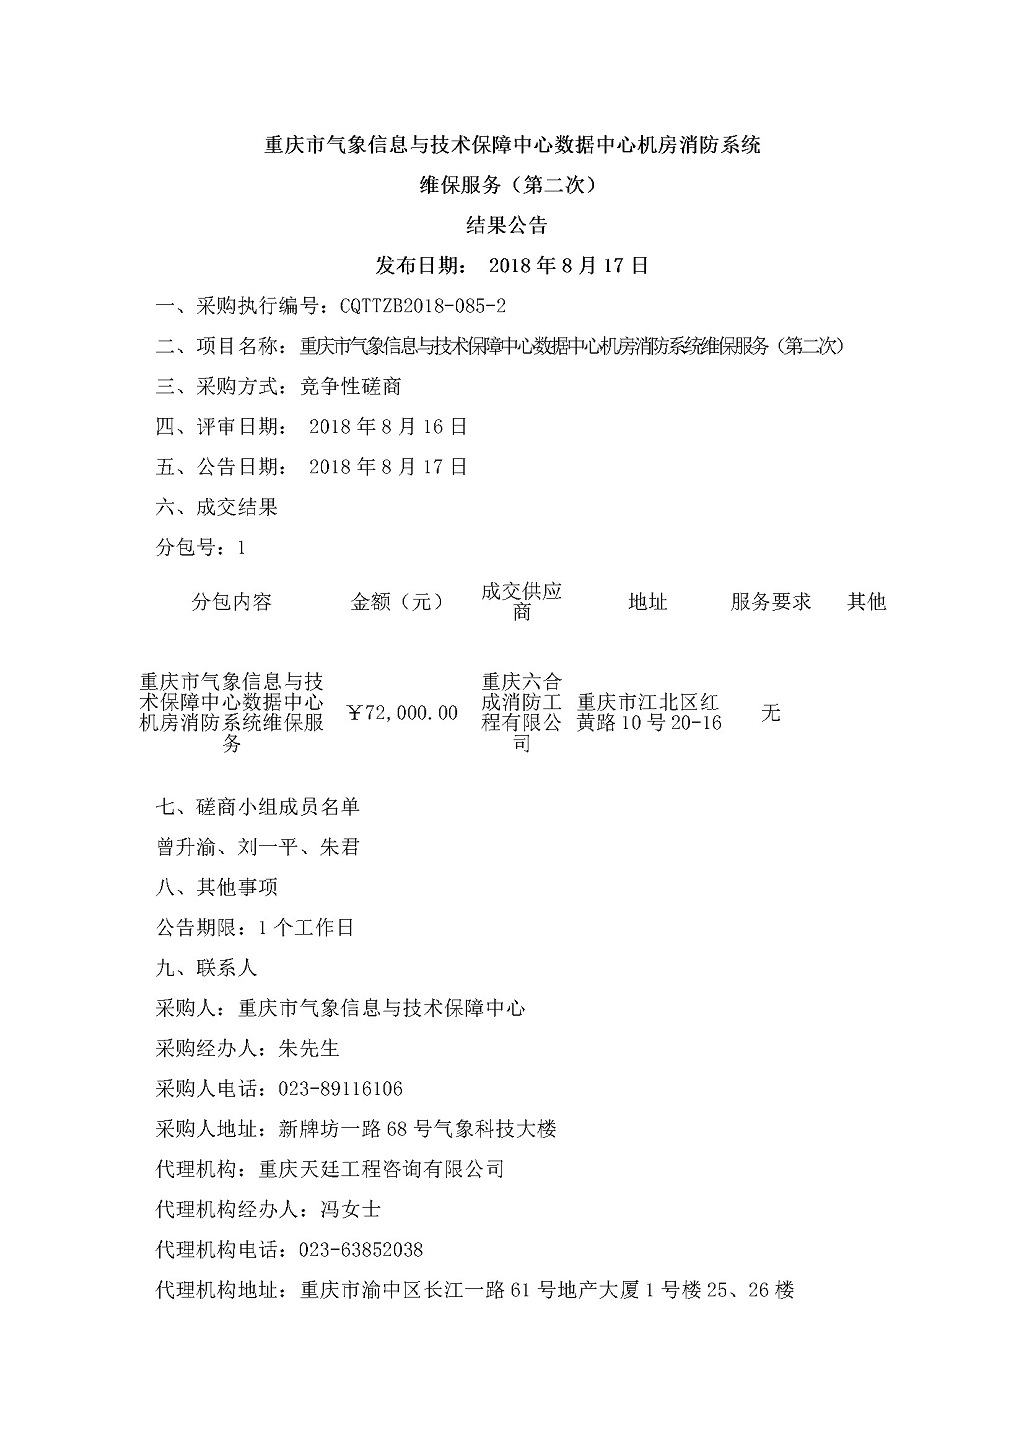 20180817重庆市气象信息与技术保障中心数据中心机房消防系统维保服务-第二次-结果公告.jpg